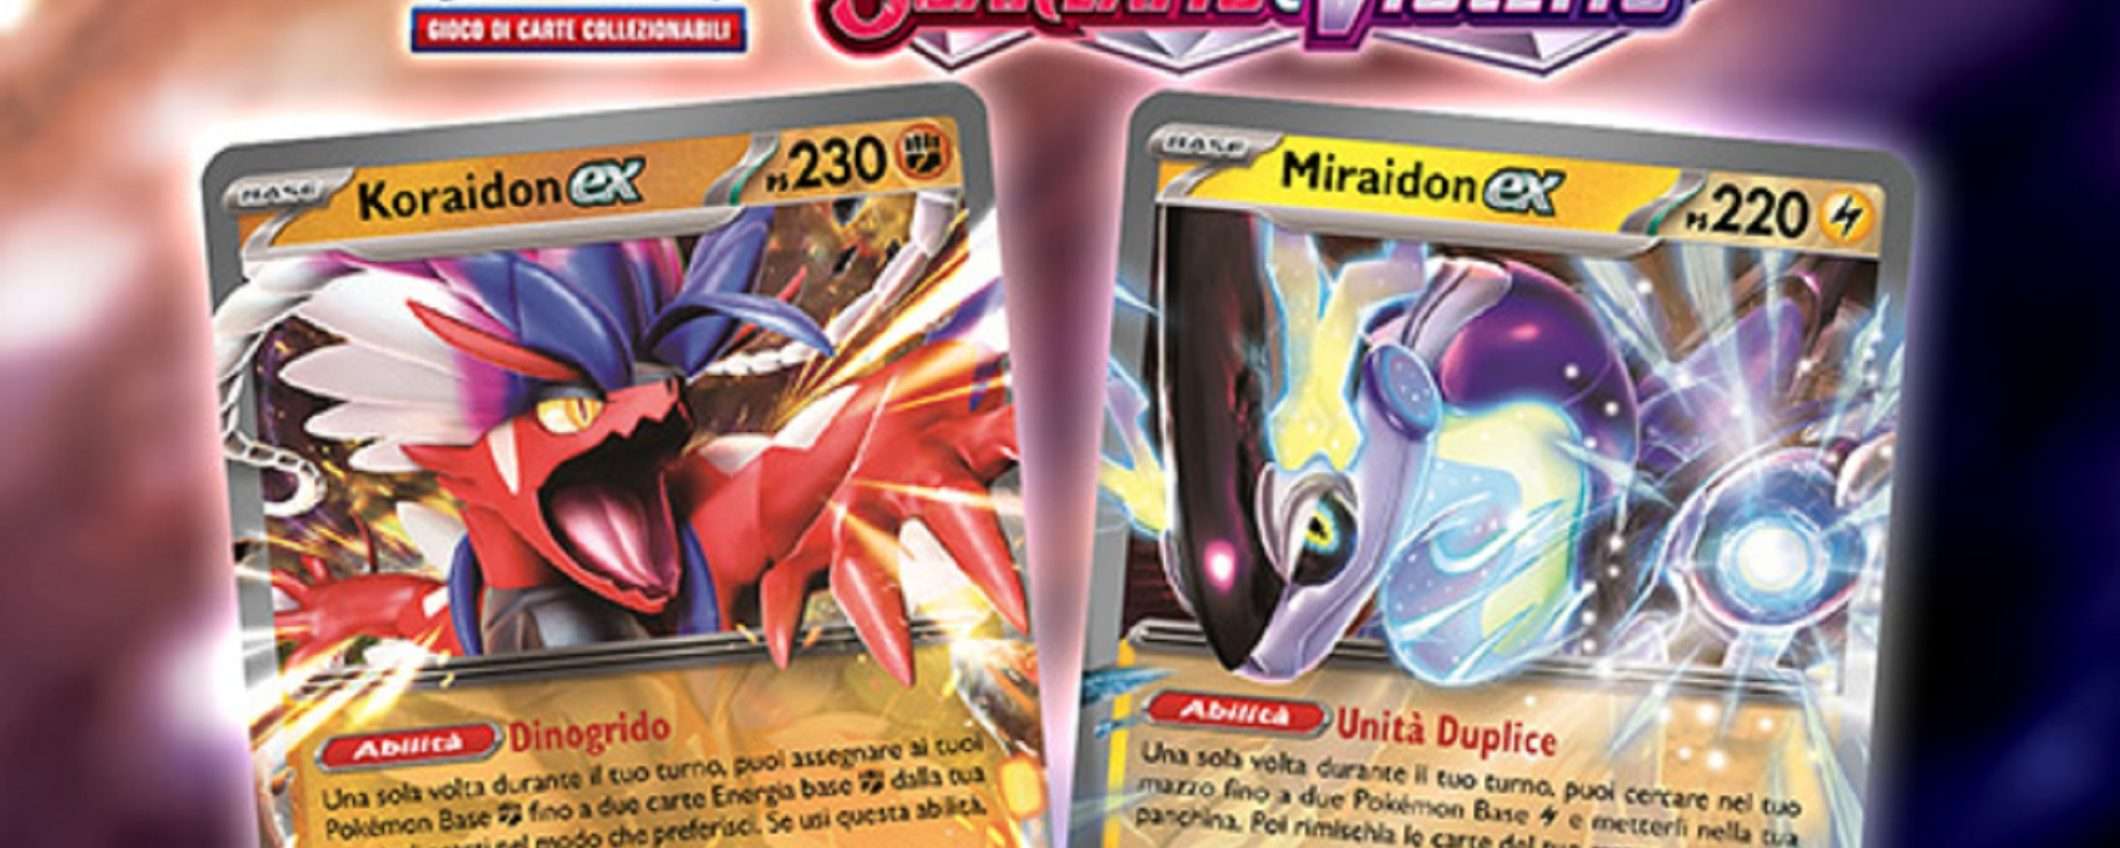 Pokémon Violetto e Scarlatto: Miraidon o Koraidon il prezzo su eBay è ASSURDO